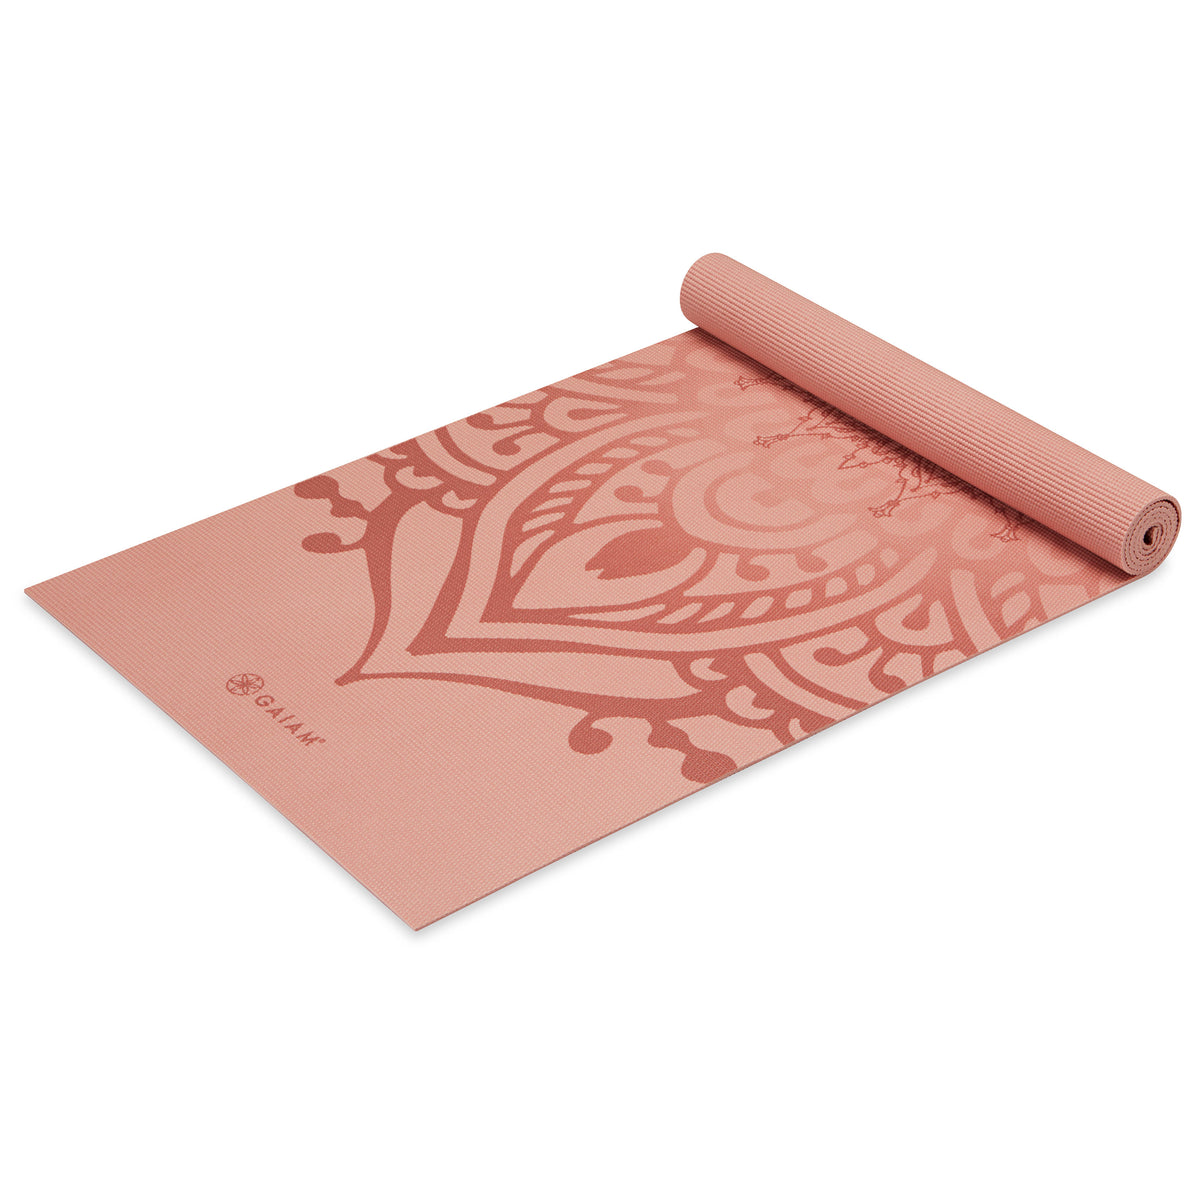 Gaiam Premium Print Yoga Mat, 5mm, Citron Sundial